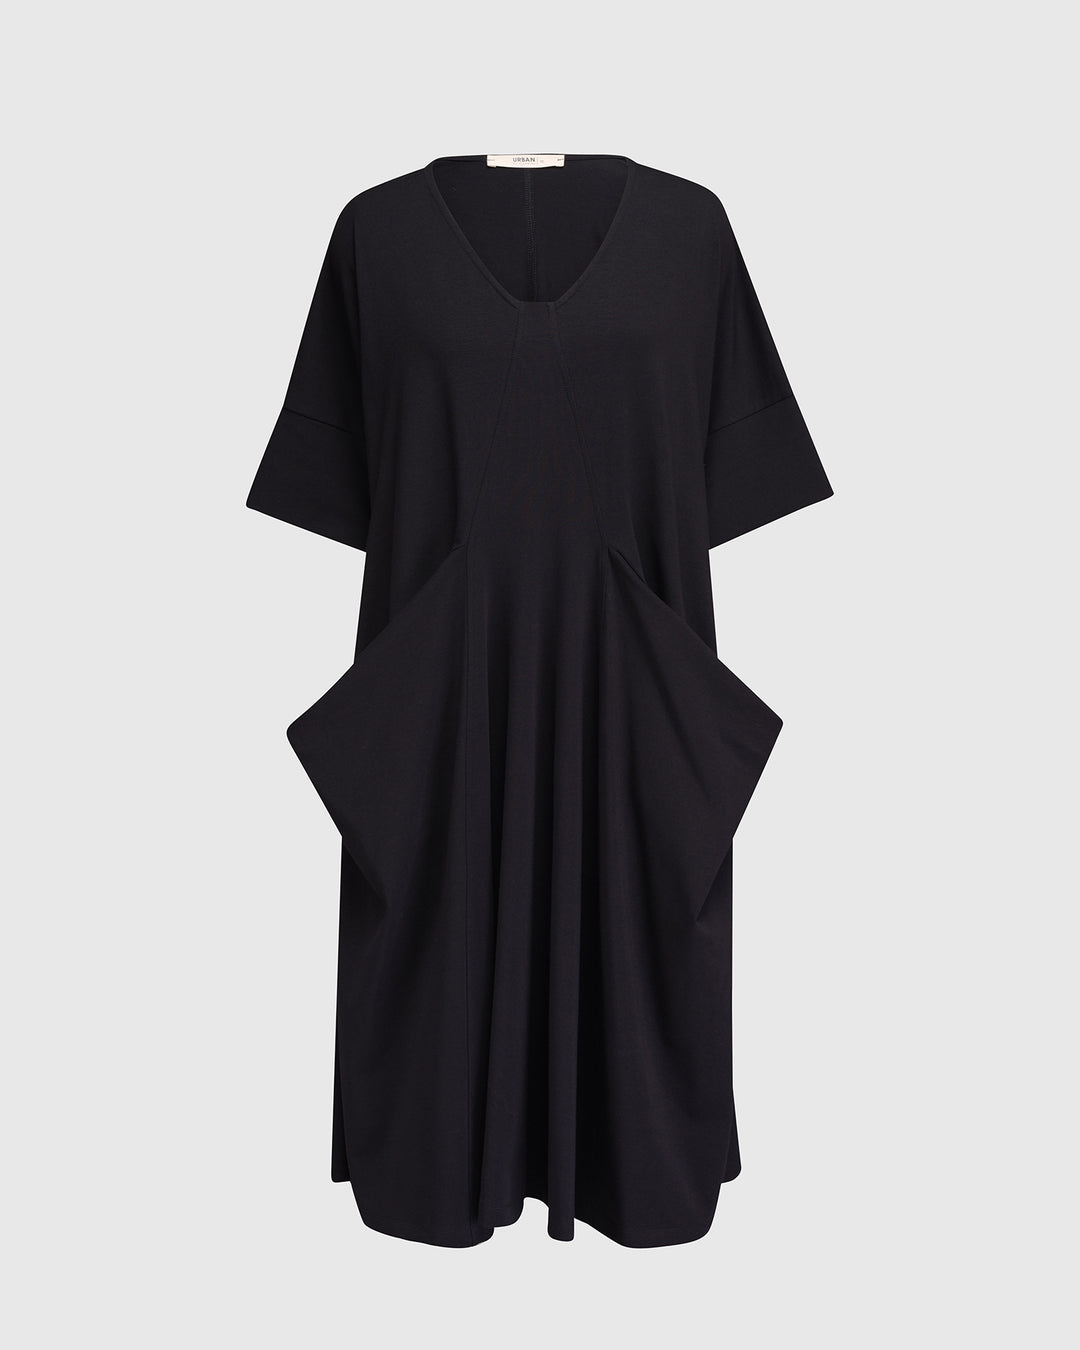 Urban Breeze Dress, Black